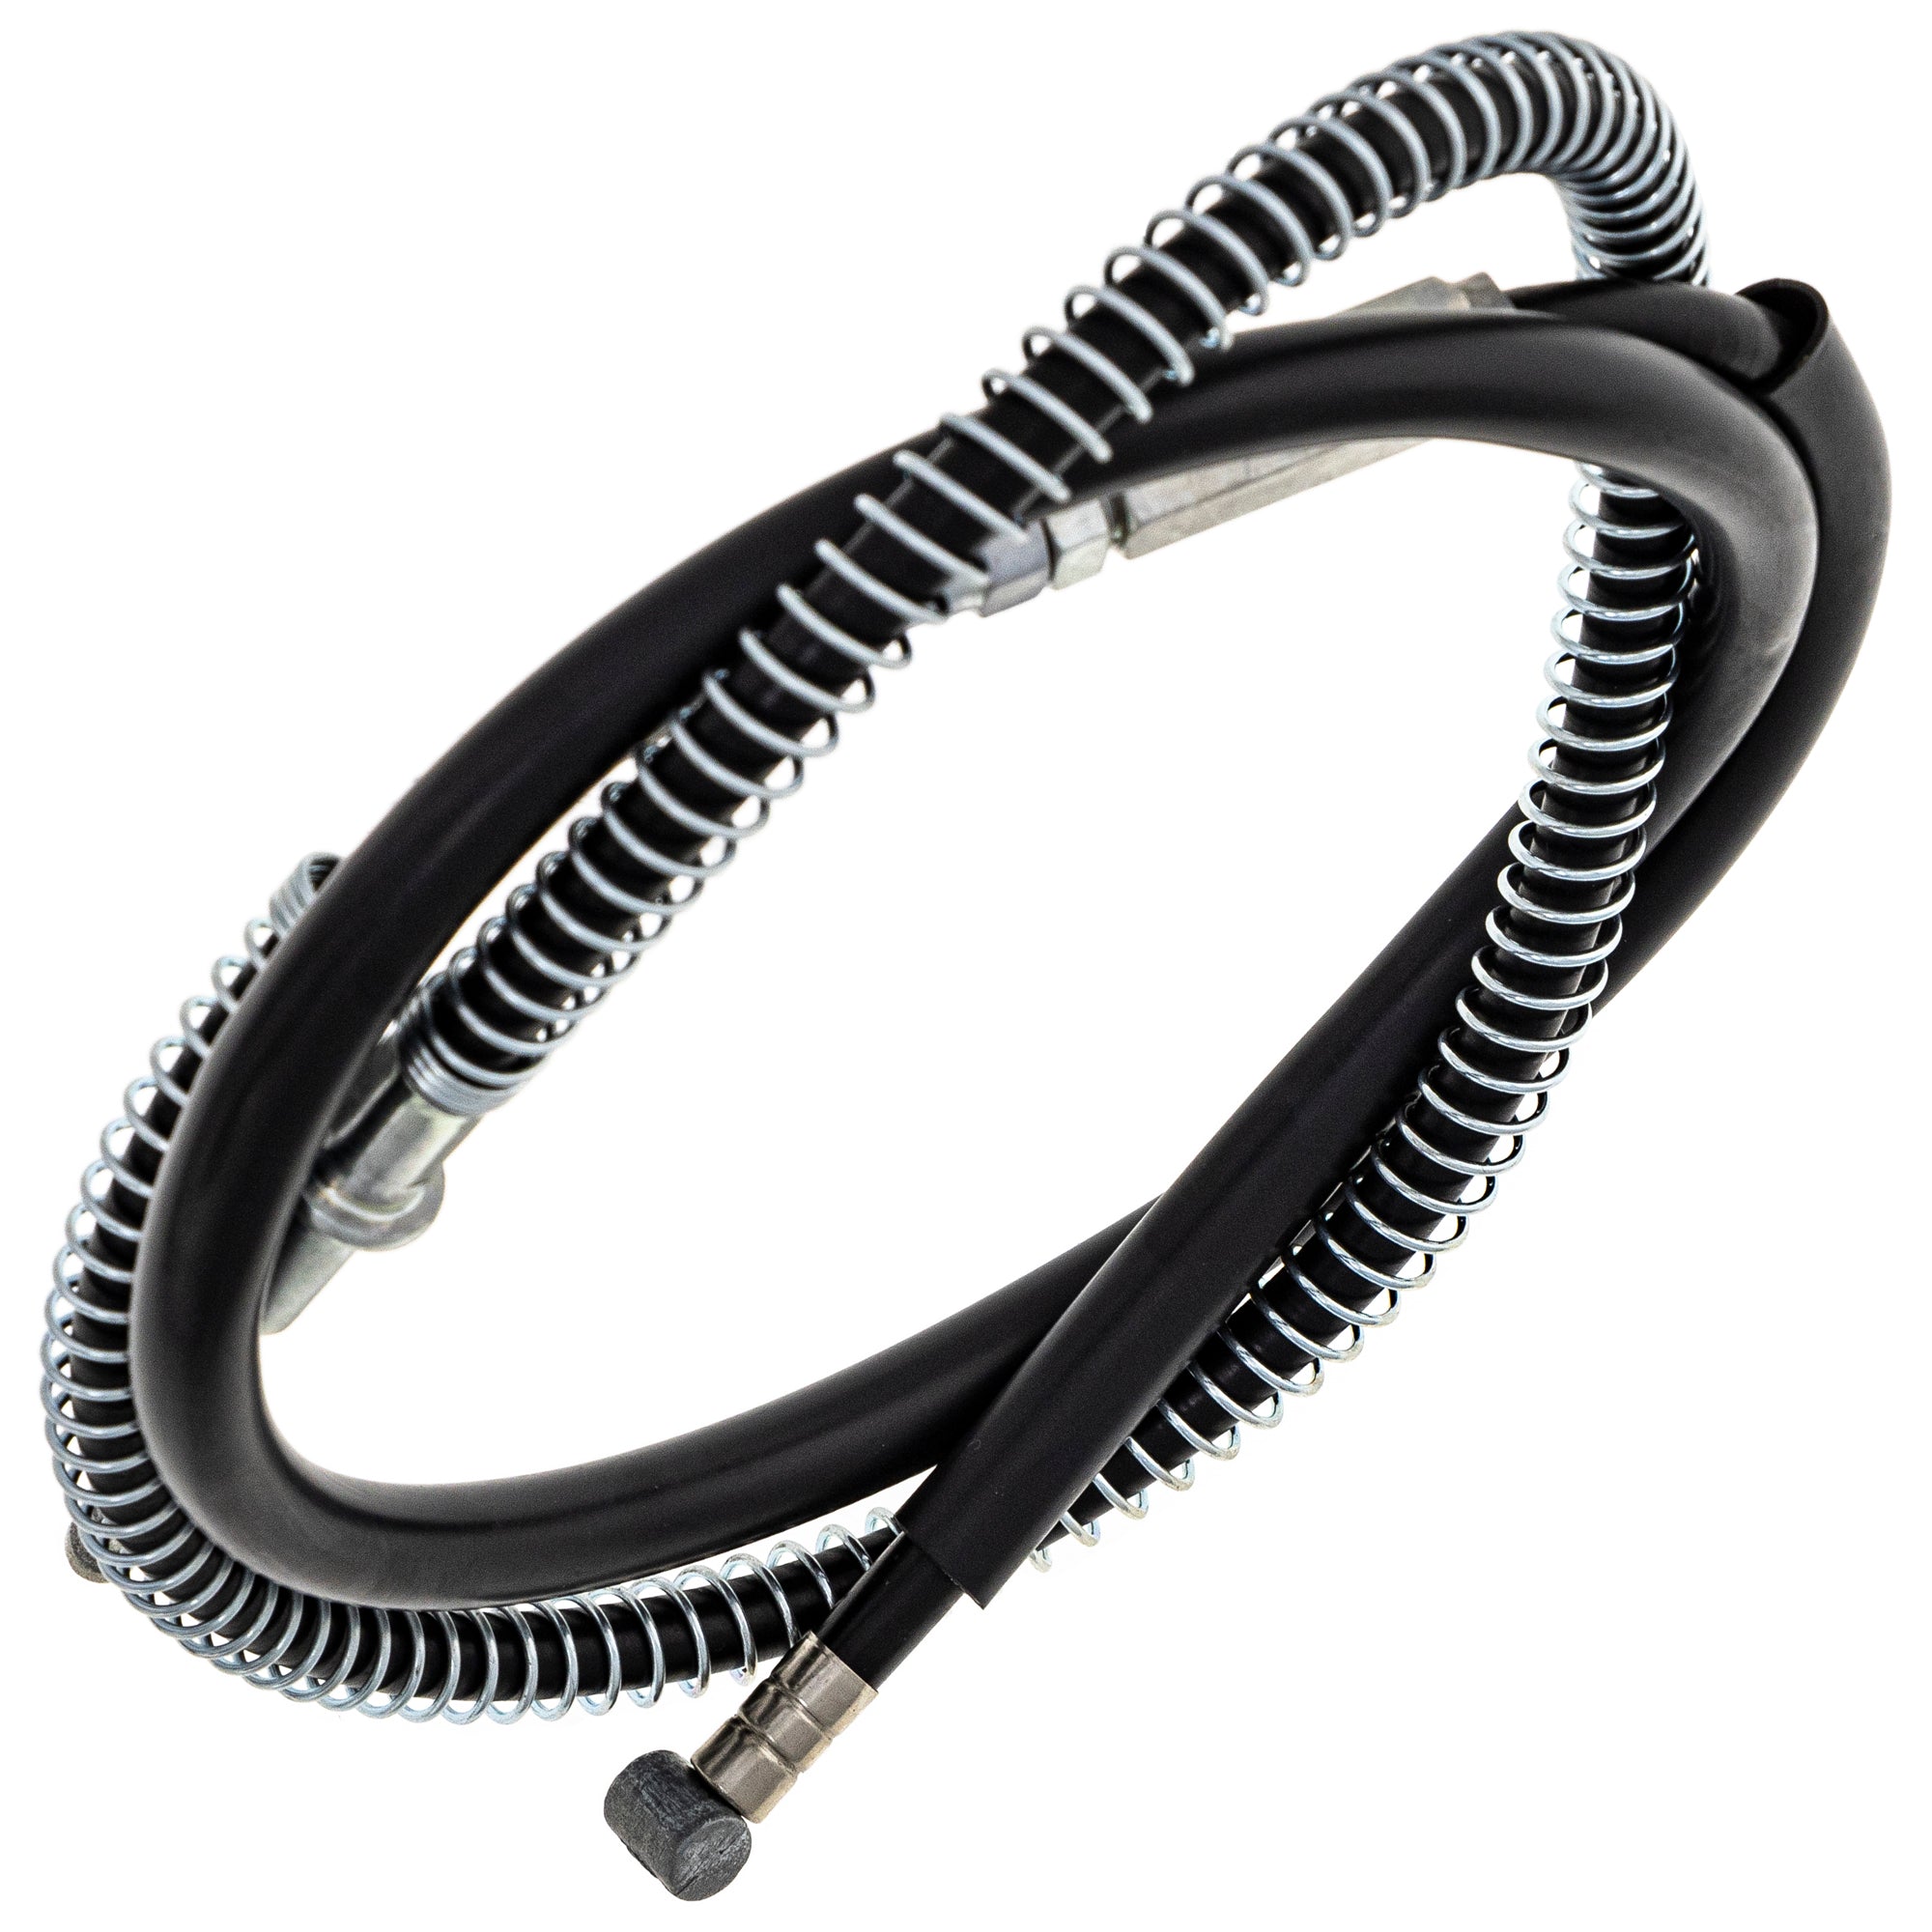 Clutch Cable for Kawasaki KZ1000 KZ1100 KZ700 KZ750 Z1R 54011-1101